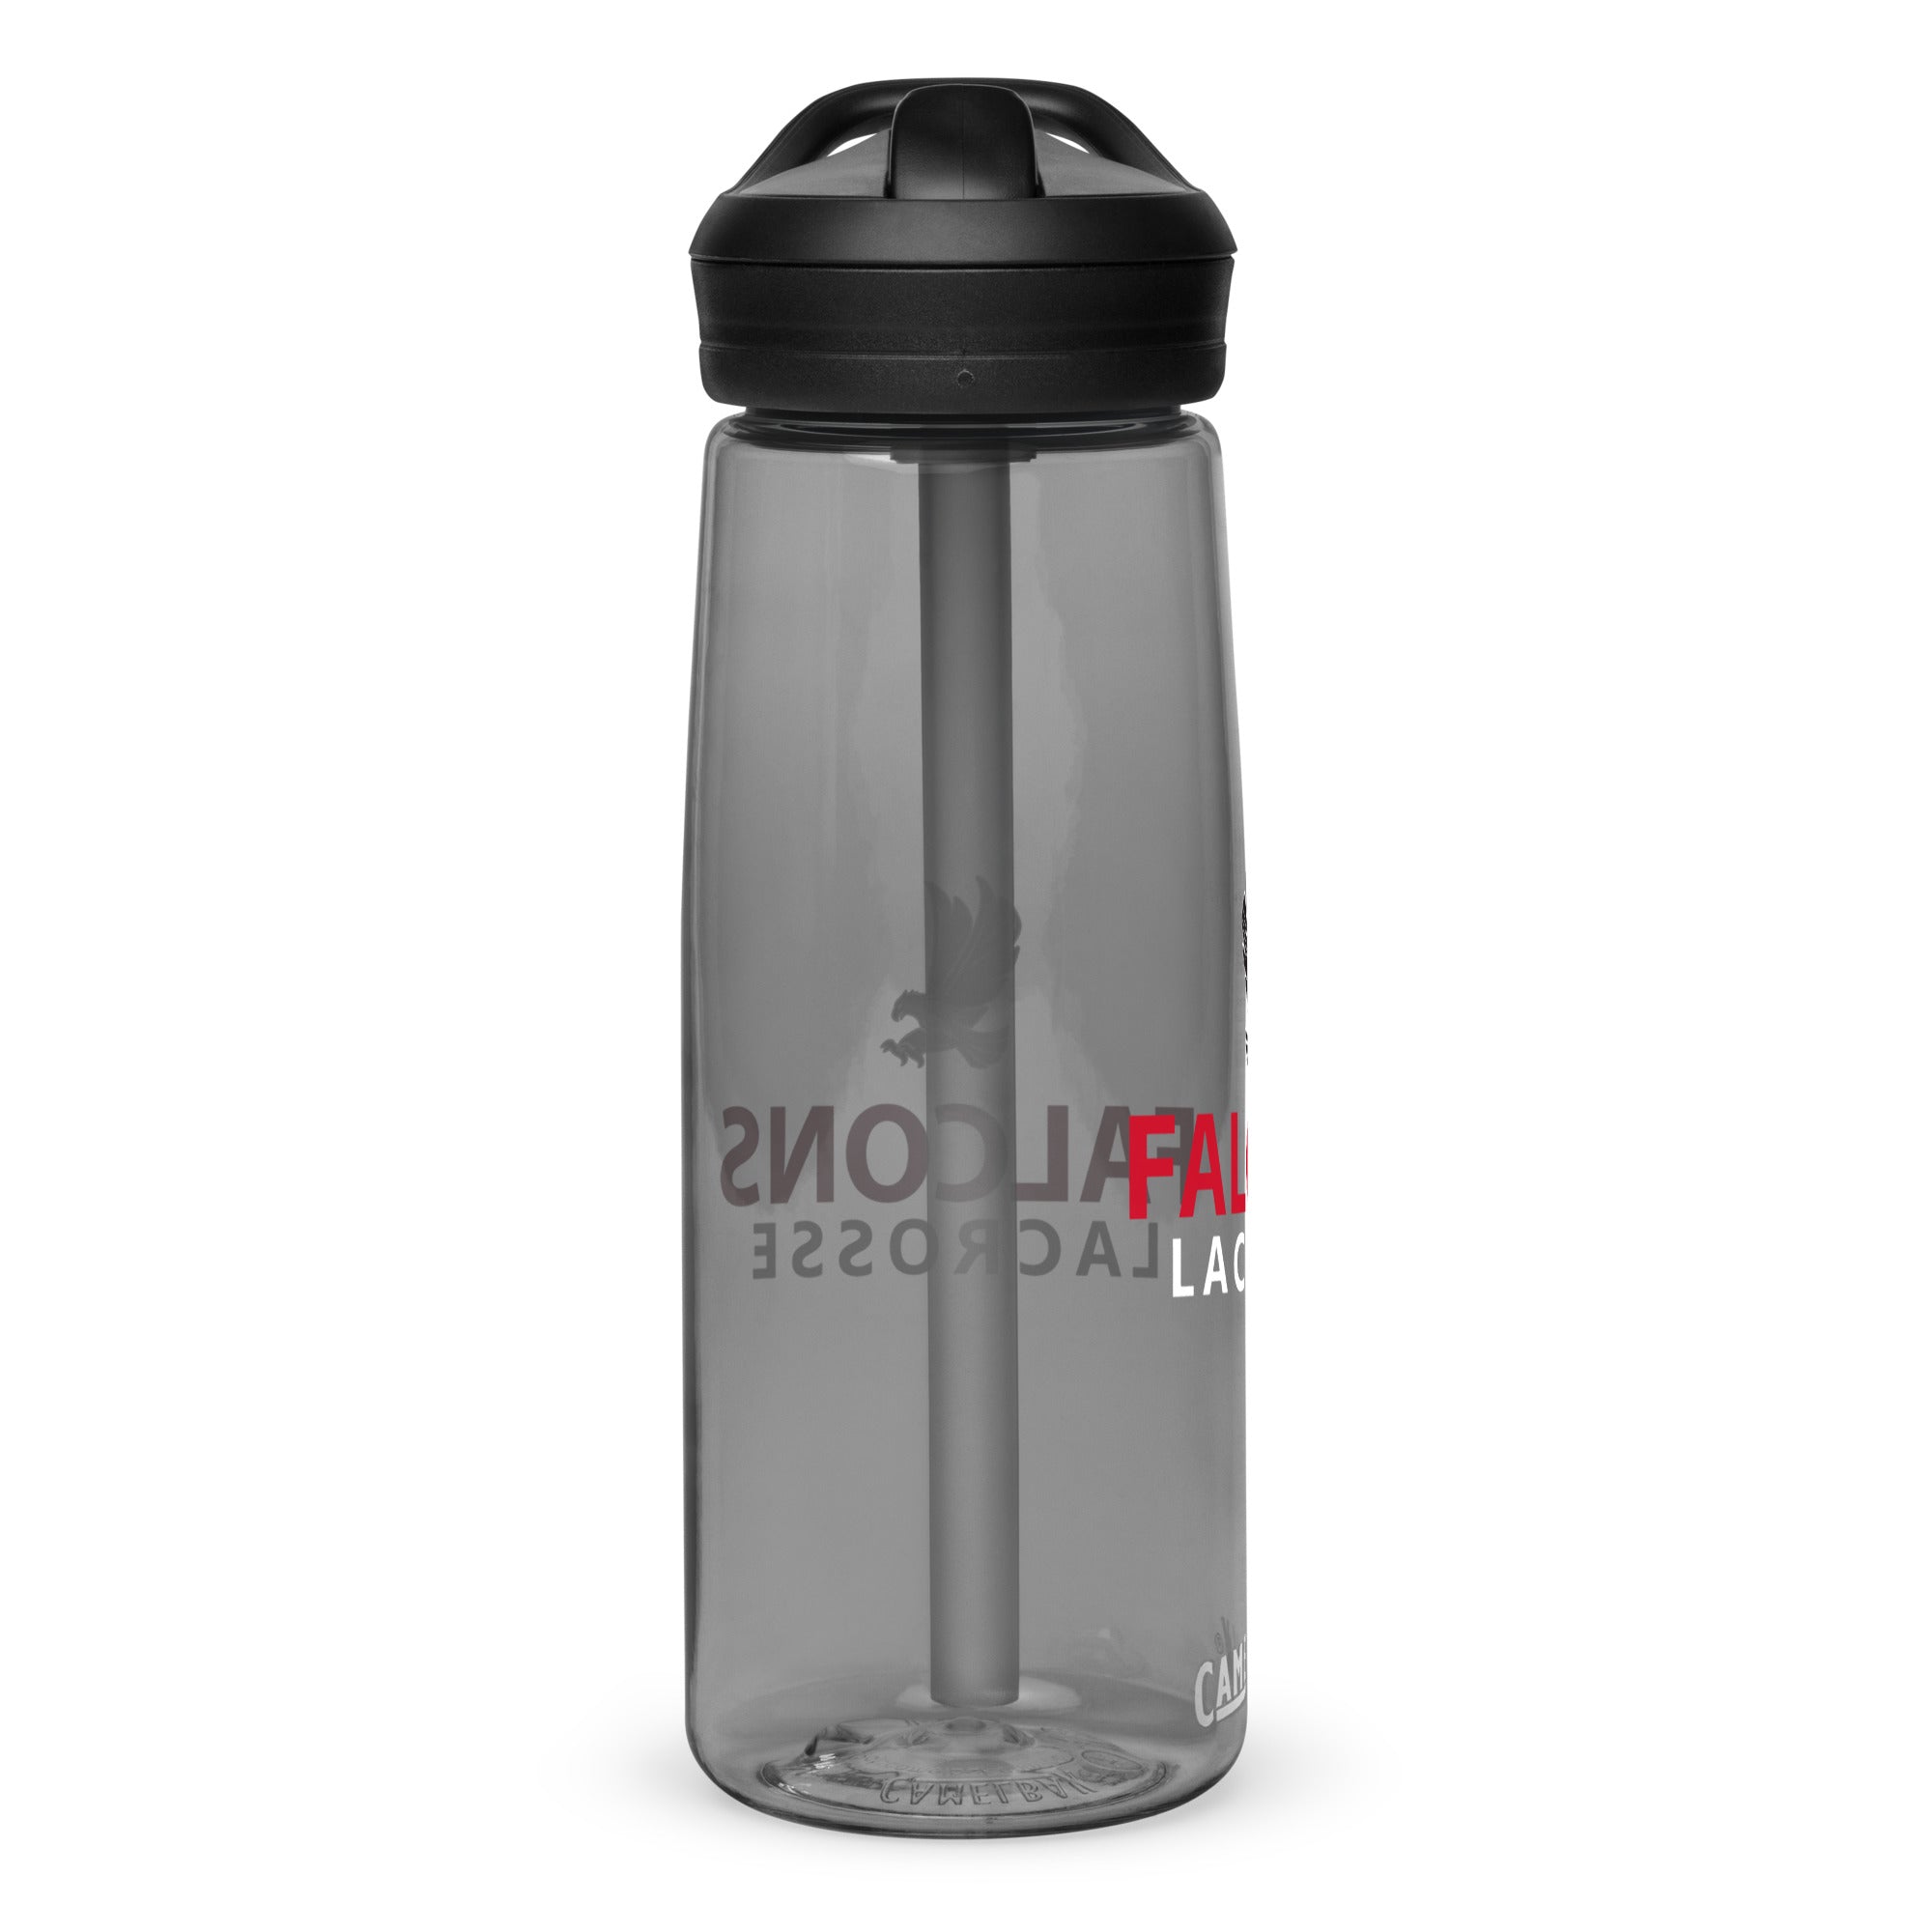 GMLA Sports water bottle